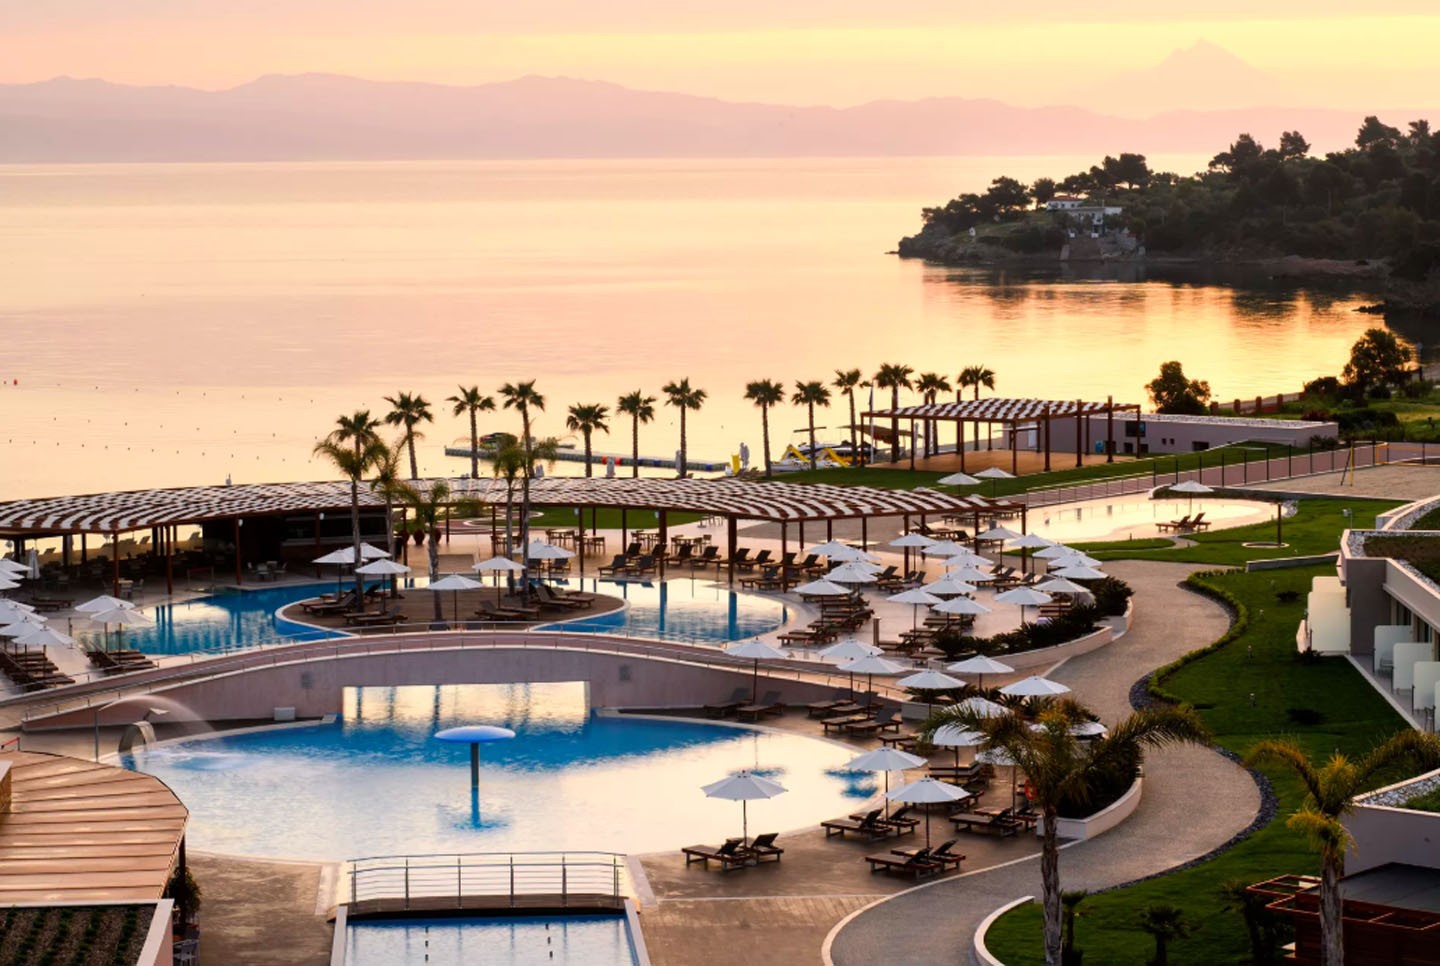 10 hotéis com piscinas termais  (Foto: divulgação)